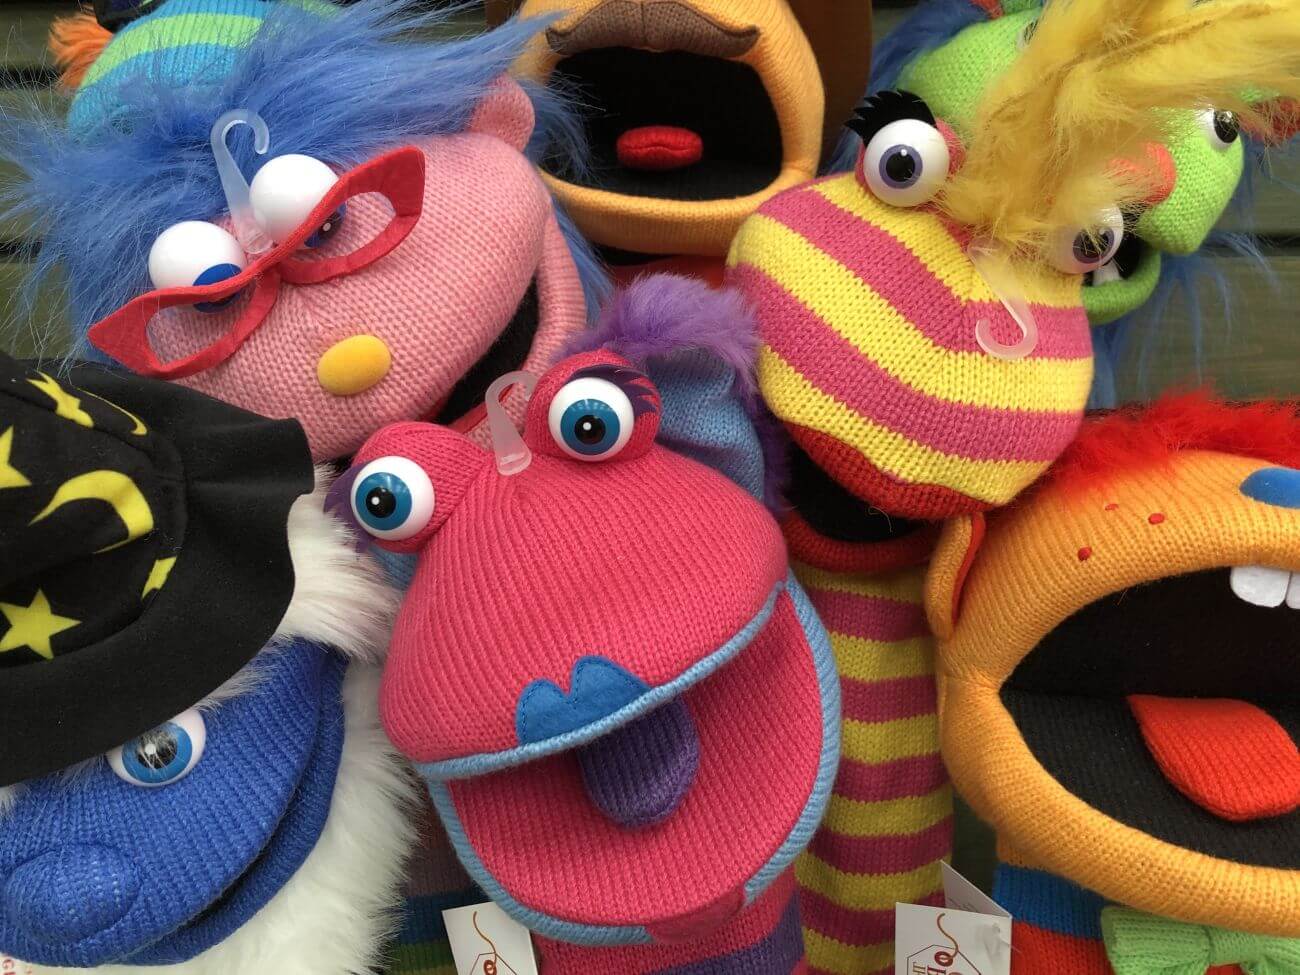 muppety imiona